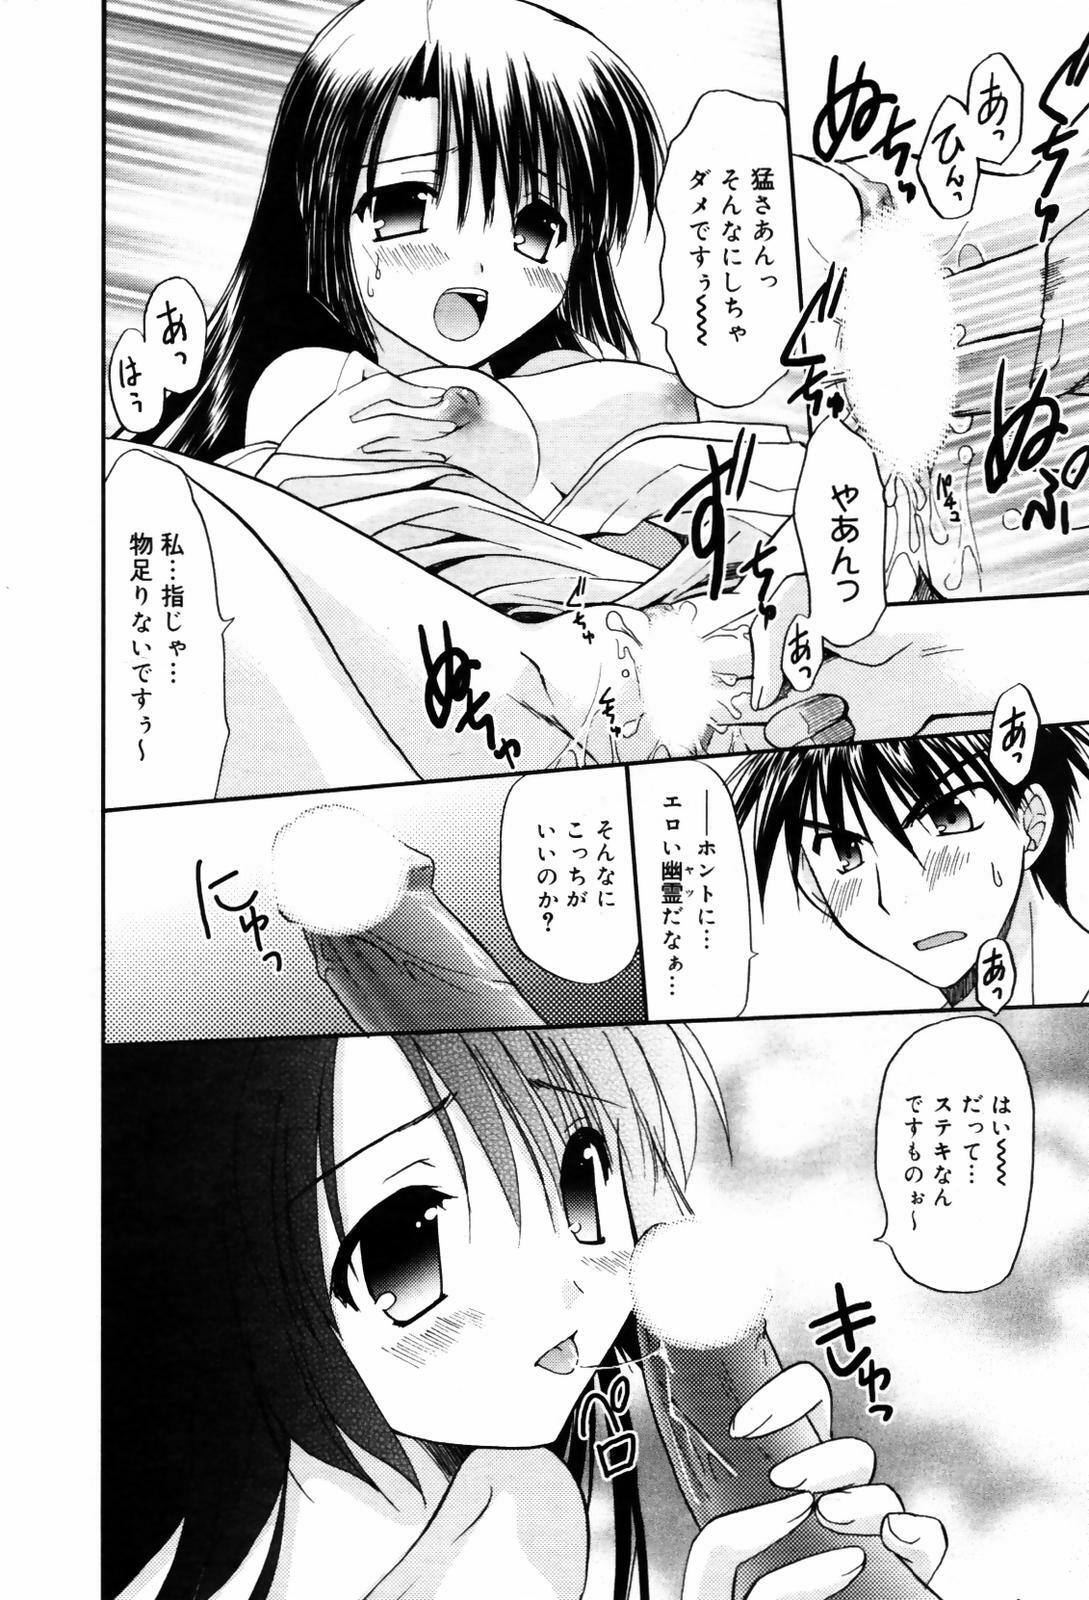 Manga Bangaichi 2007-09 page 32 full